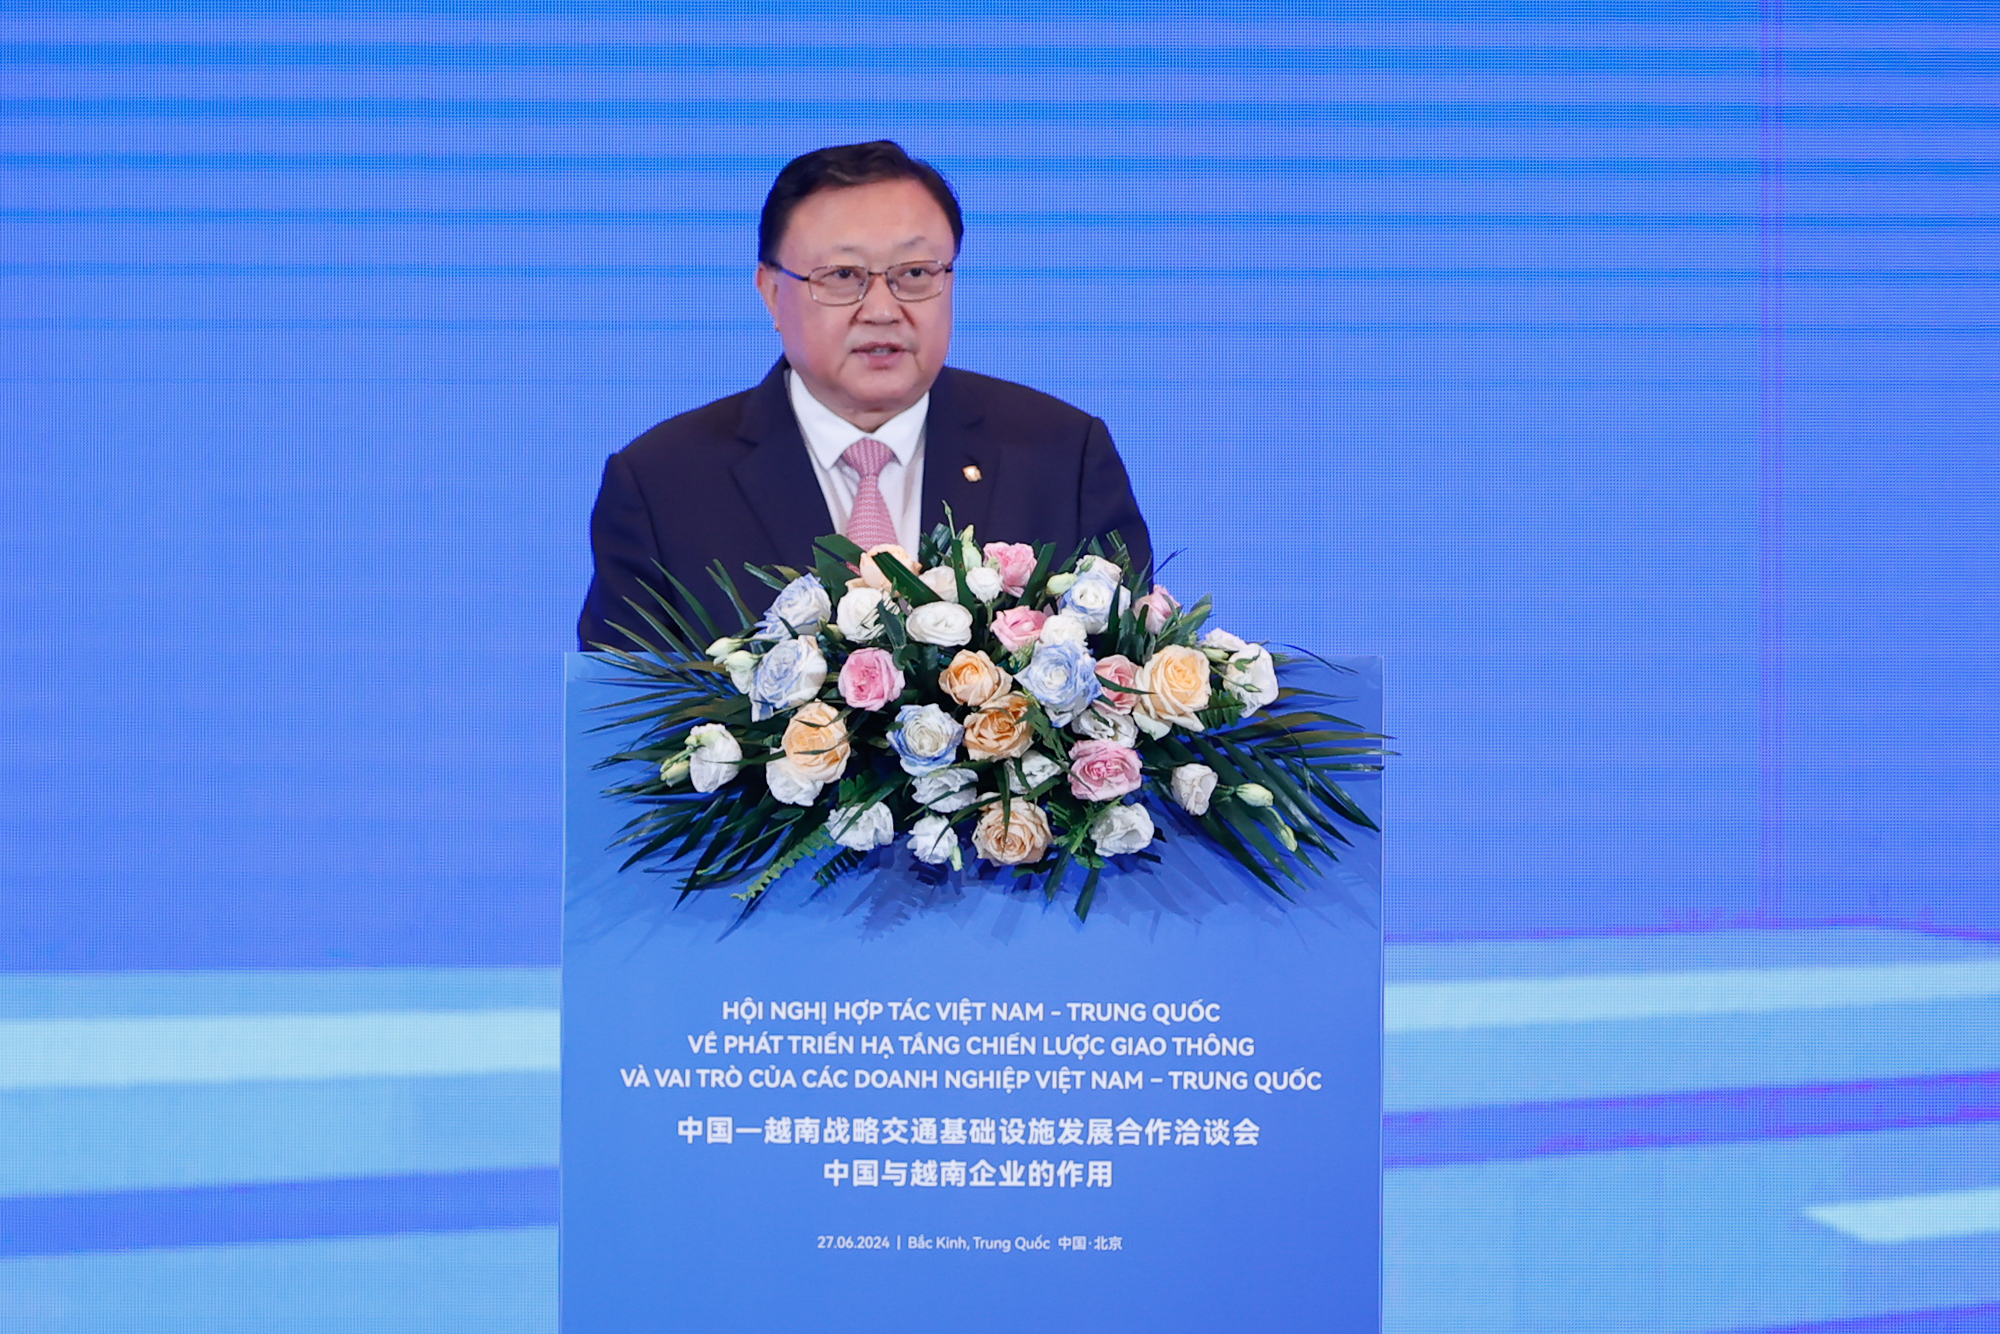 Chủ tịch HĐQT Công ty hữu hạn Tập đoàn Xây dựng giao thông Trung Quốc Vương Đồng Trụ phát biểu tại hội nghị - Ảnh: VGP/Nhật Bắc